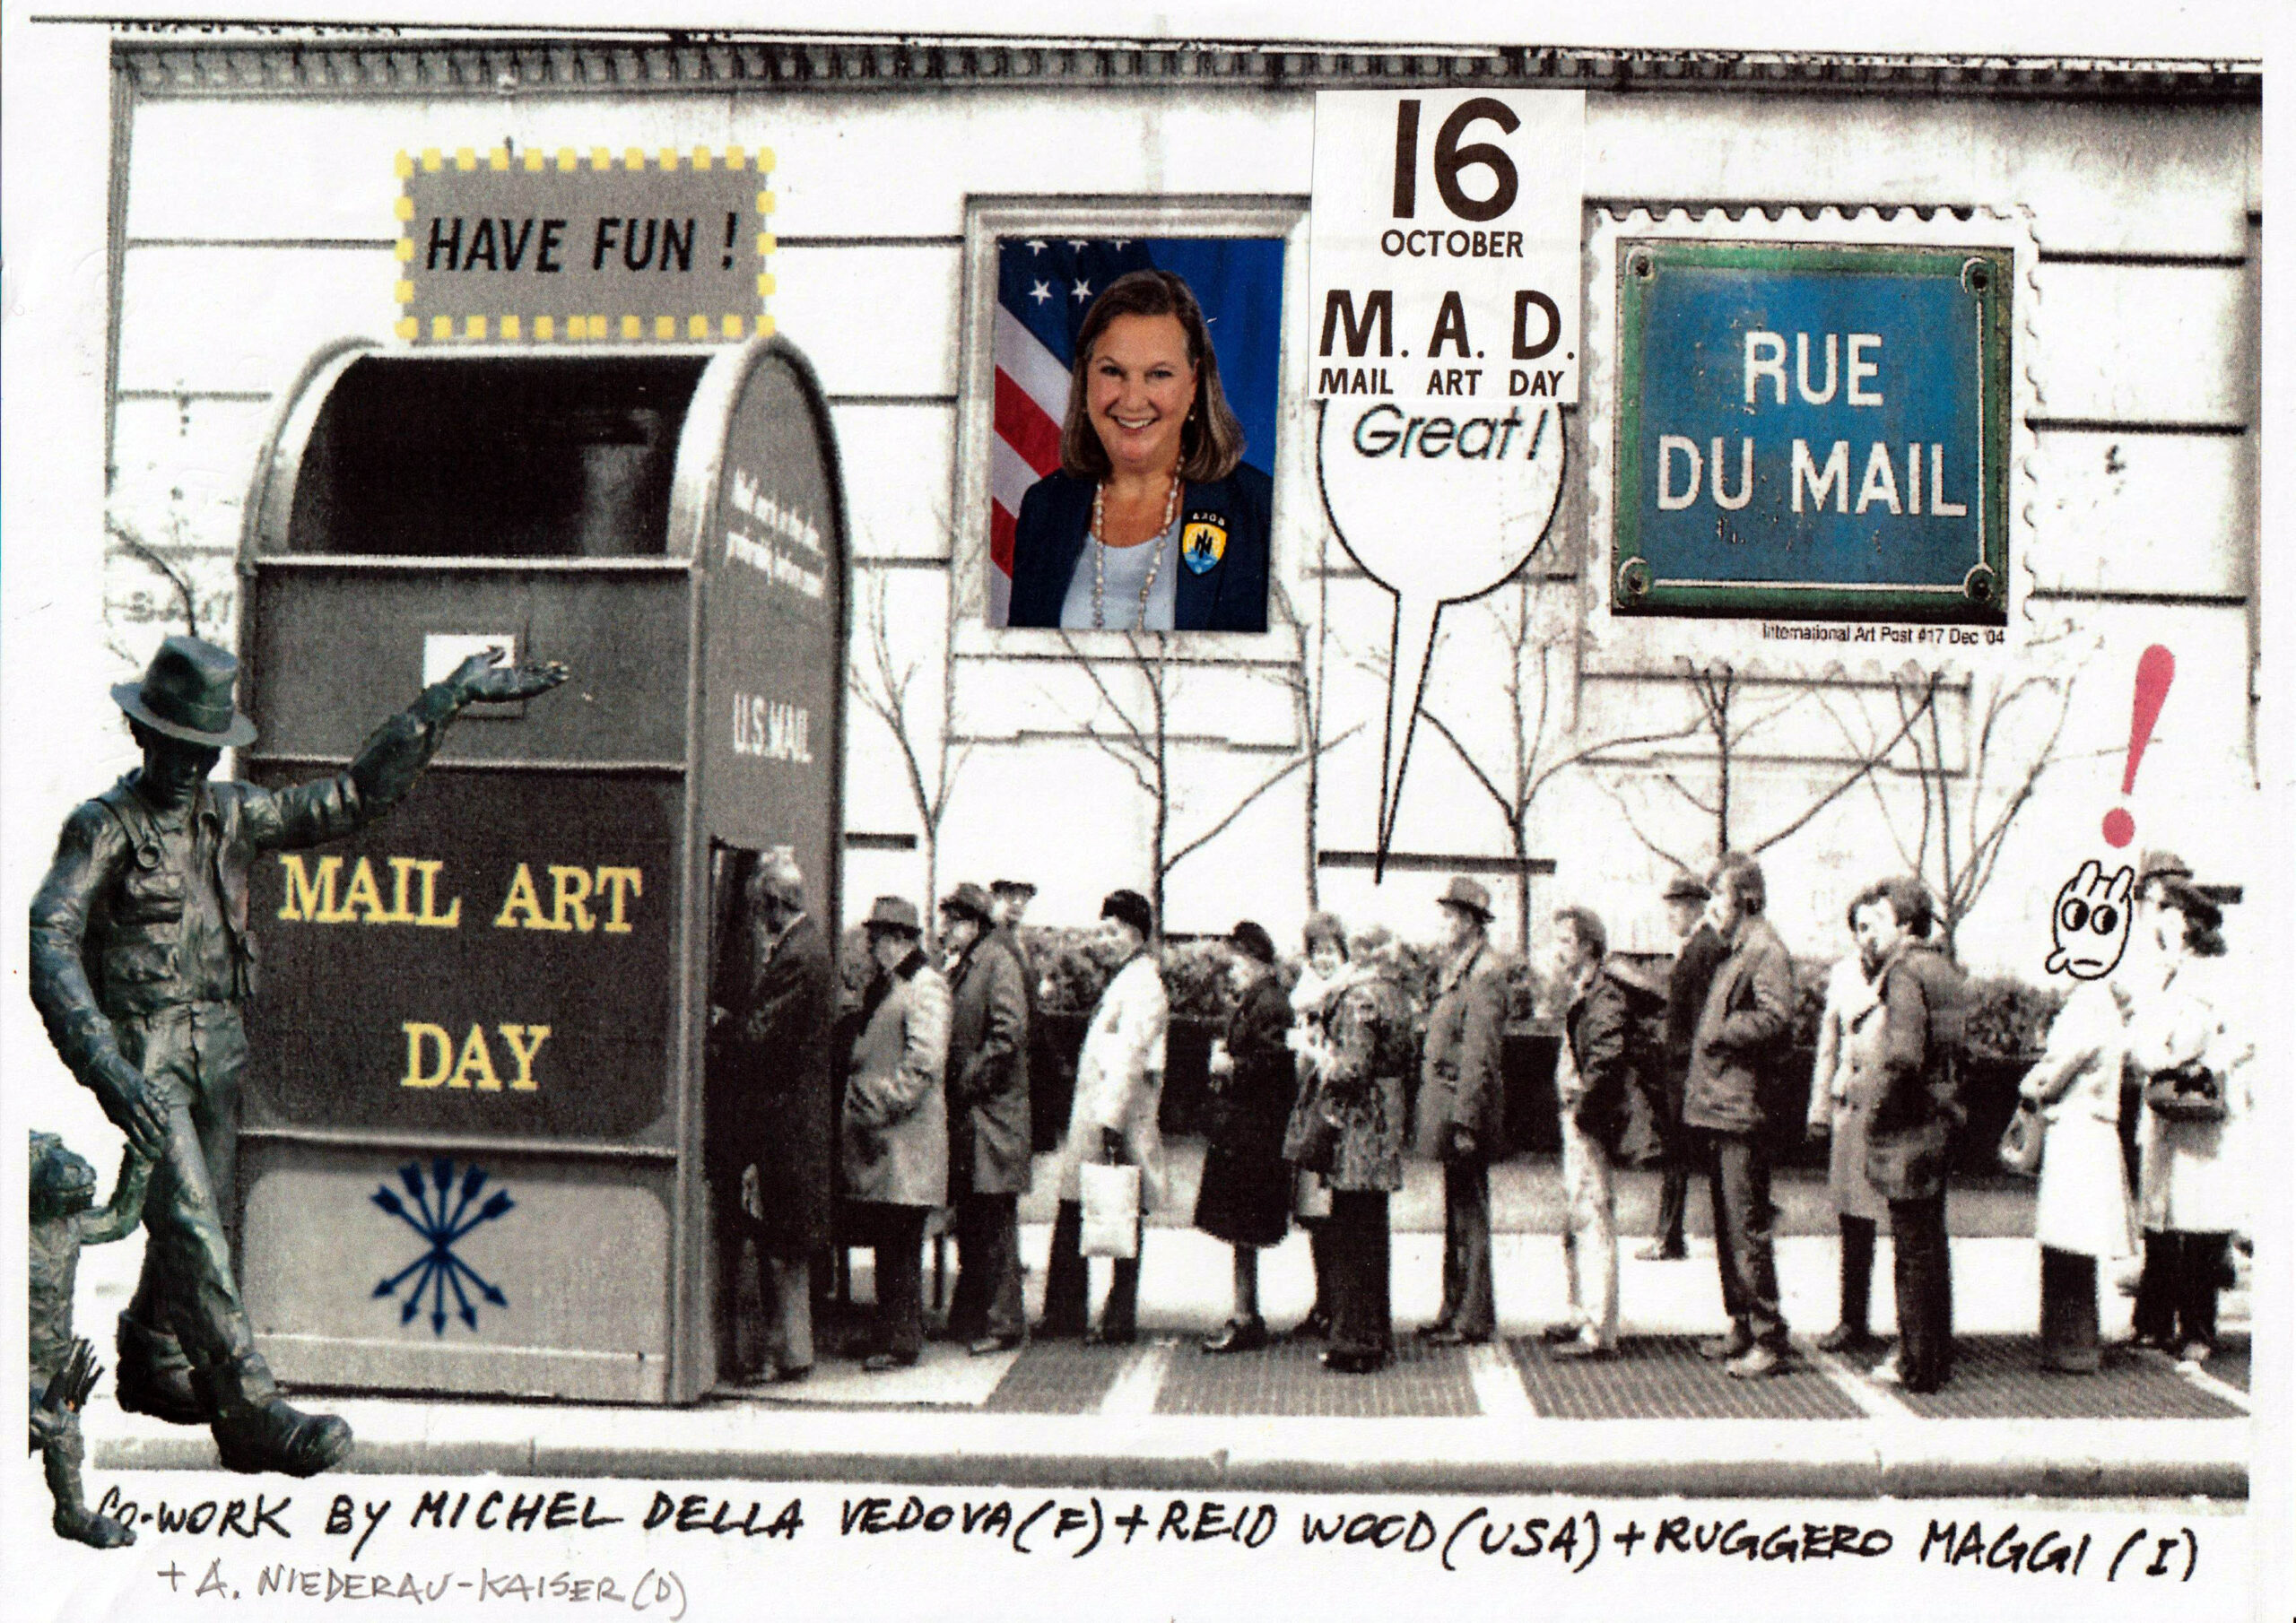 M.A.D. - Mail Art Day: Co-work by Michel Dellavedova (F) & Reid Wood (USA) & Ruggero Maggi, France